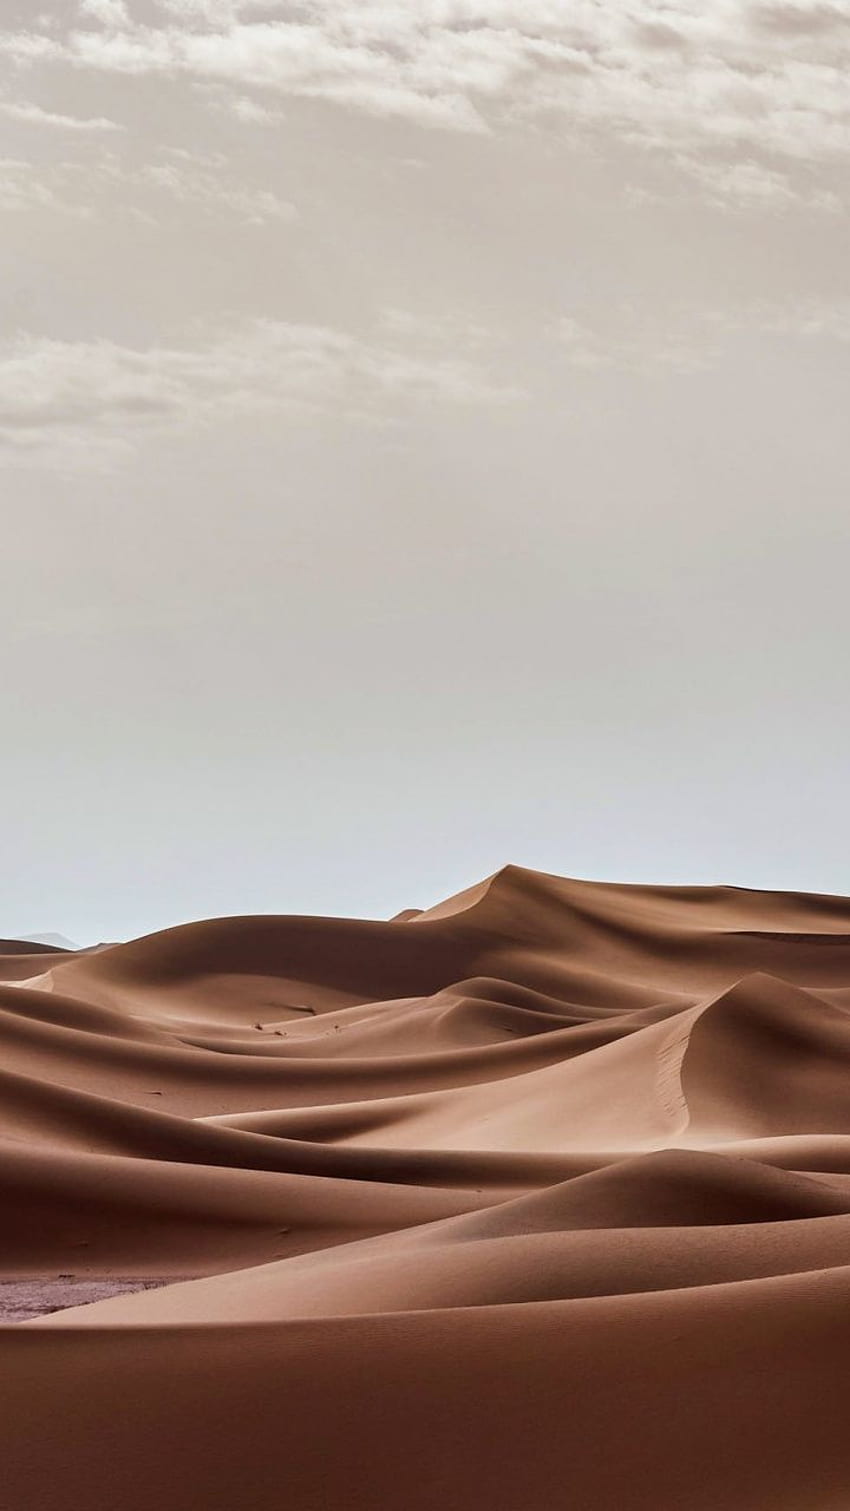 風景、砂漠の砂丘、自然、. 砂漠、砂漠の美学 HD電話の壁紙